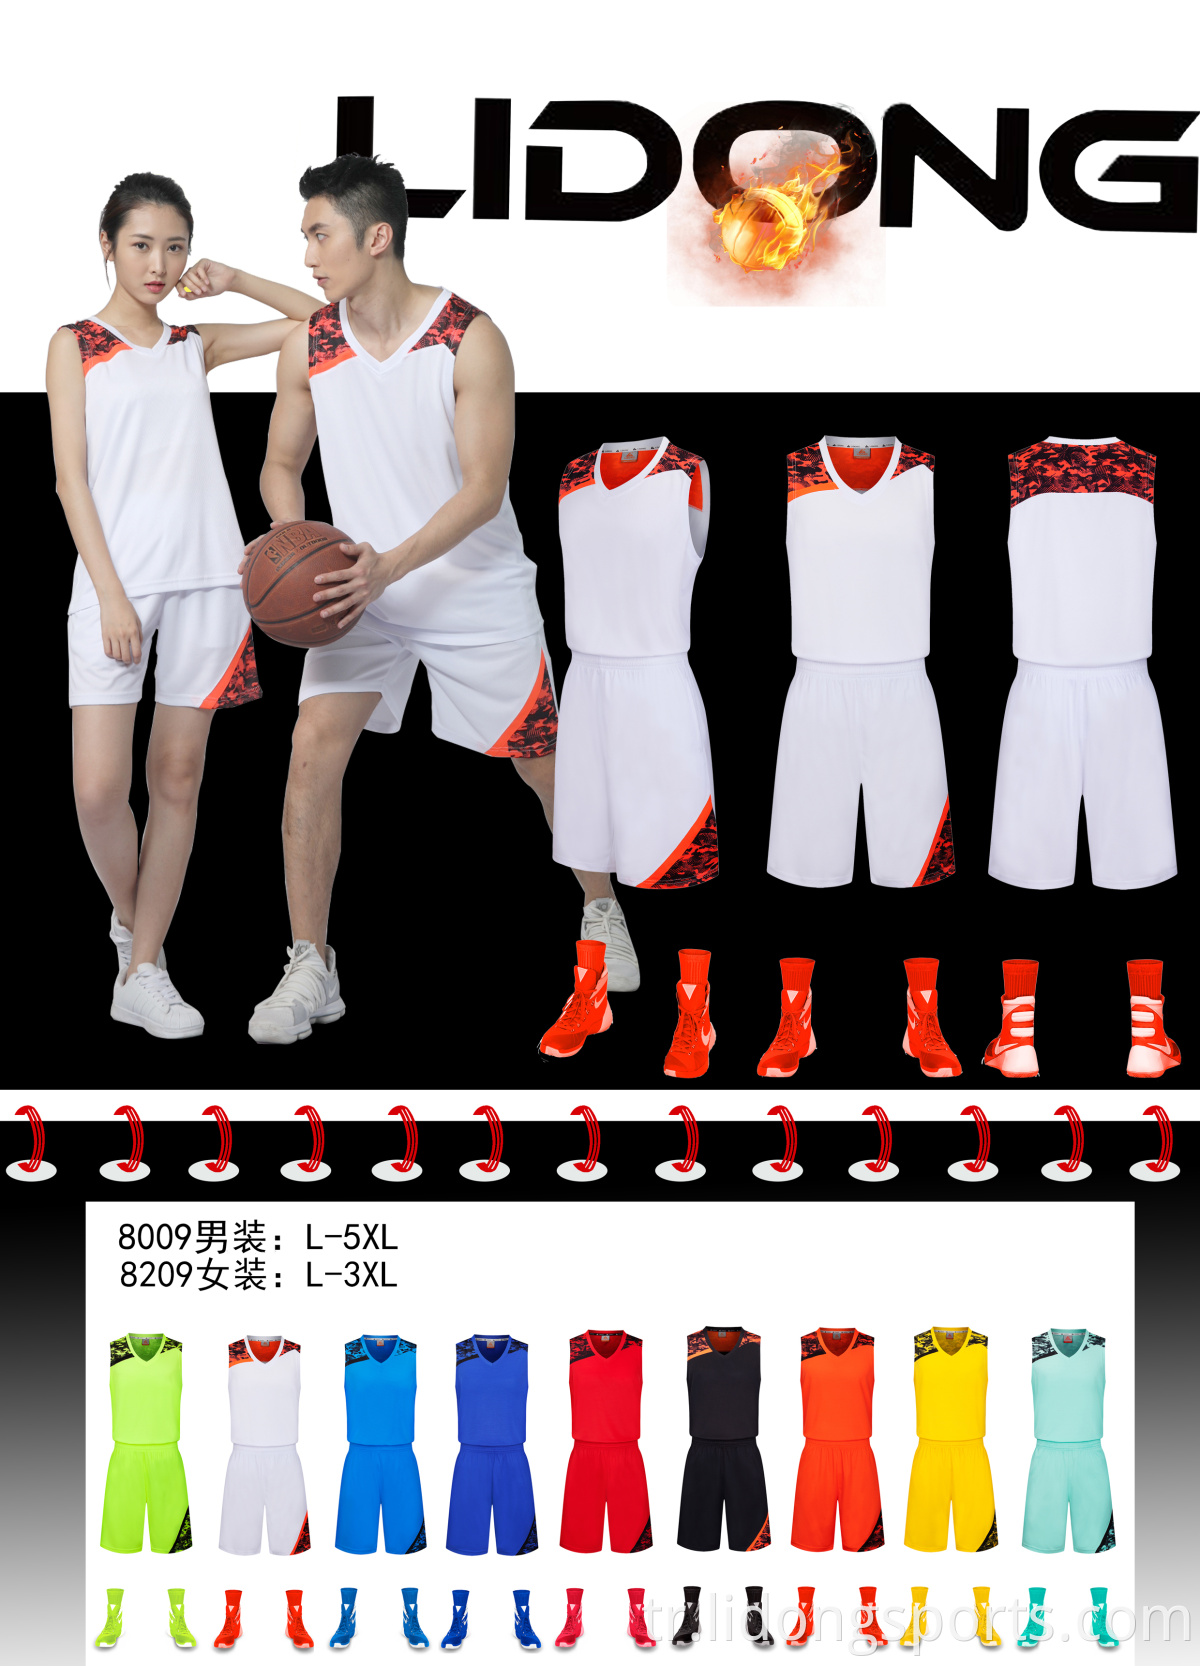 % 100 Polyester Basketbol Forması Özel Boş Basketbol Formaları Toptan Basketbol Forması Tasarımı